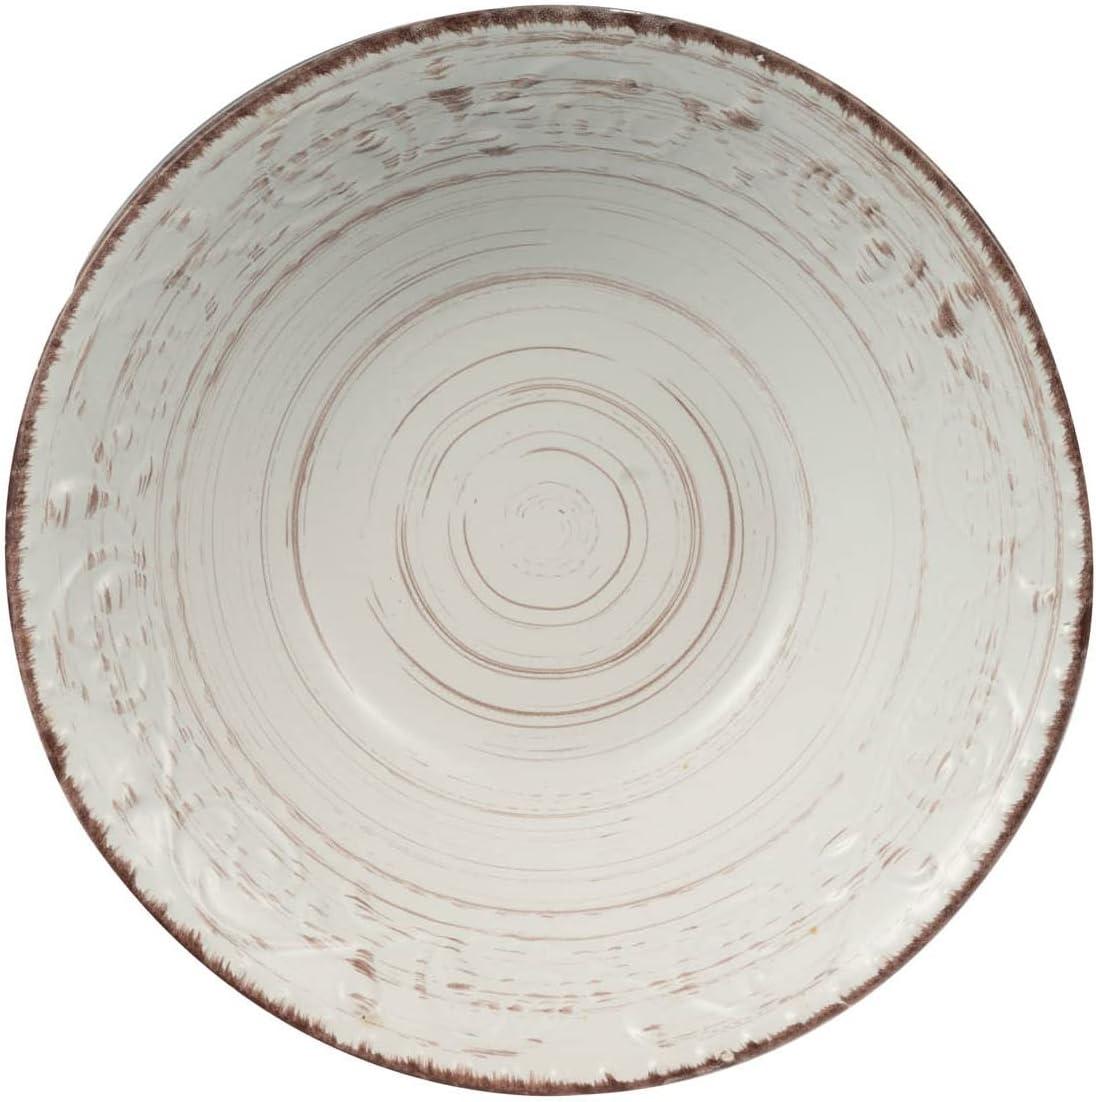 Elegant Rustic Flare 9.8" Ceramic Serving Bowl in Antiqued White